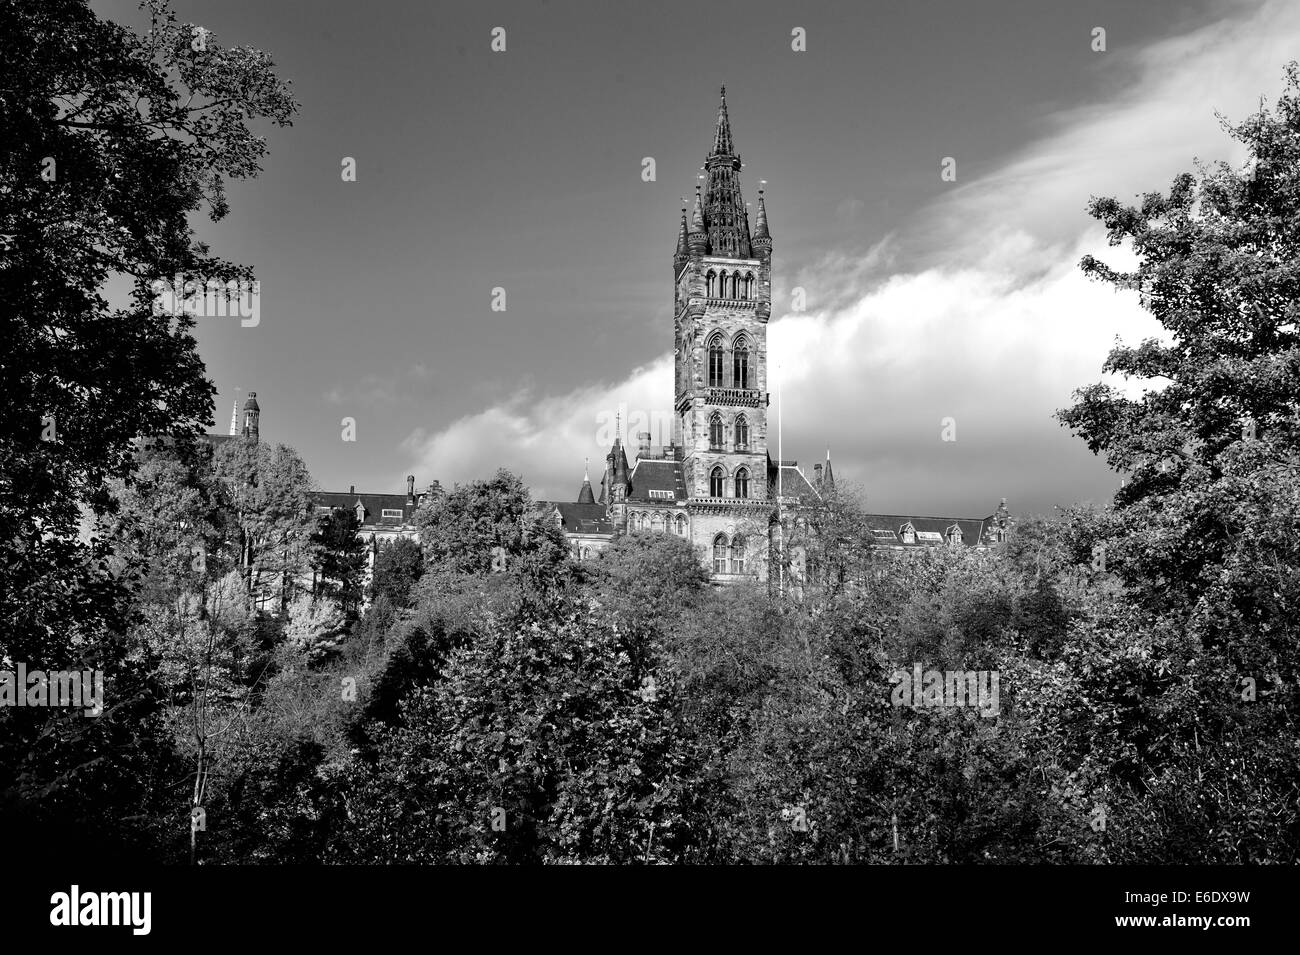 Black and white image of University of Glasgow bathed in autumn sunshine Stock Photo